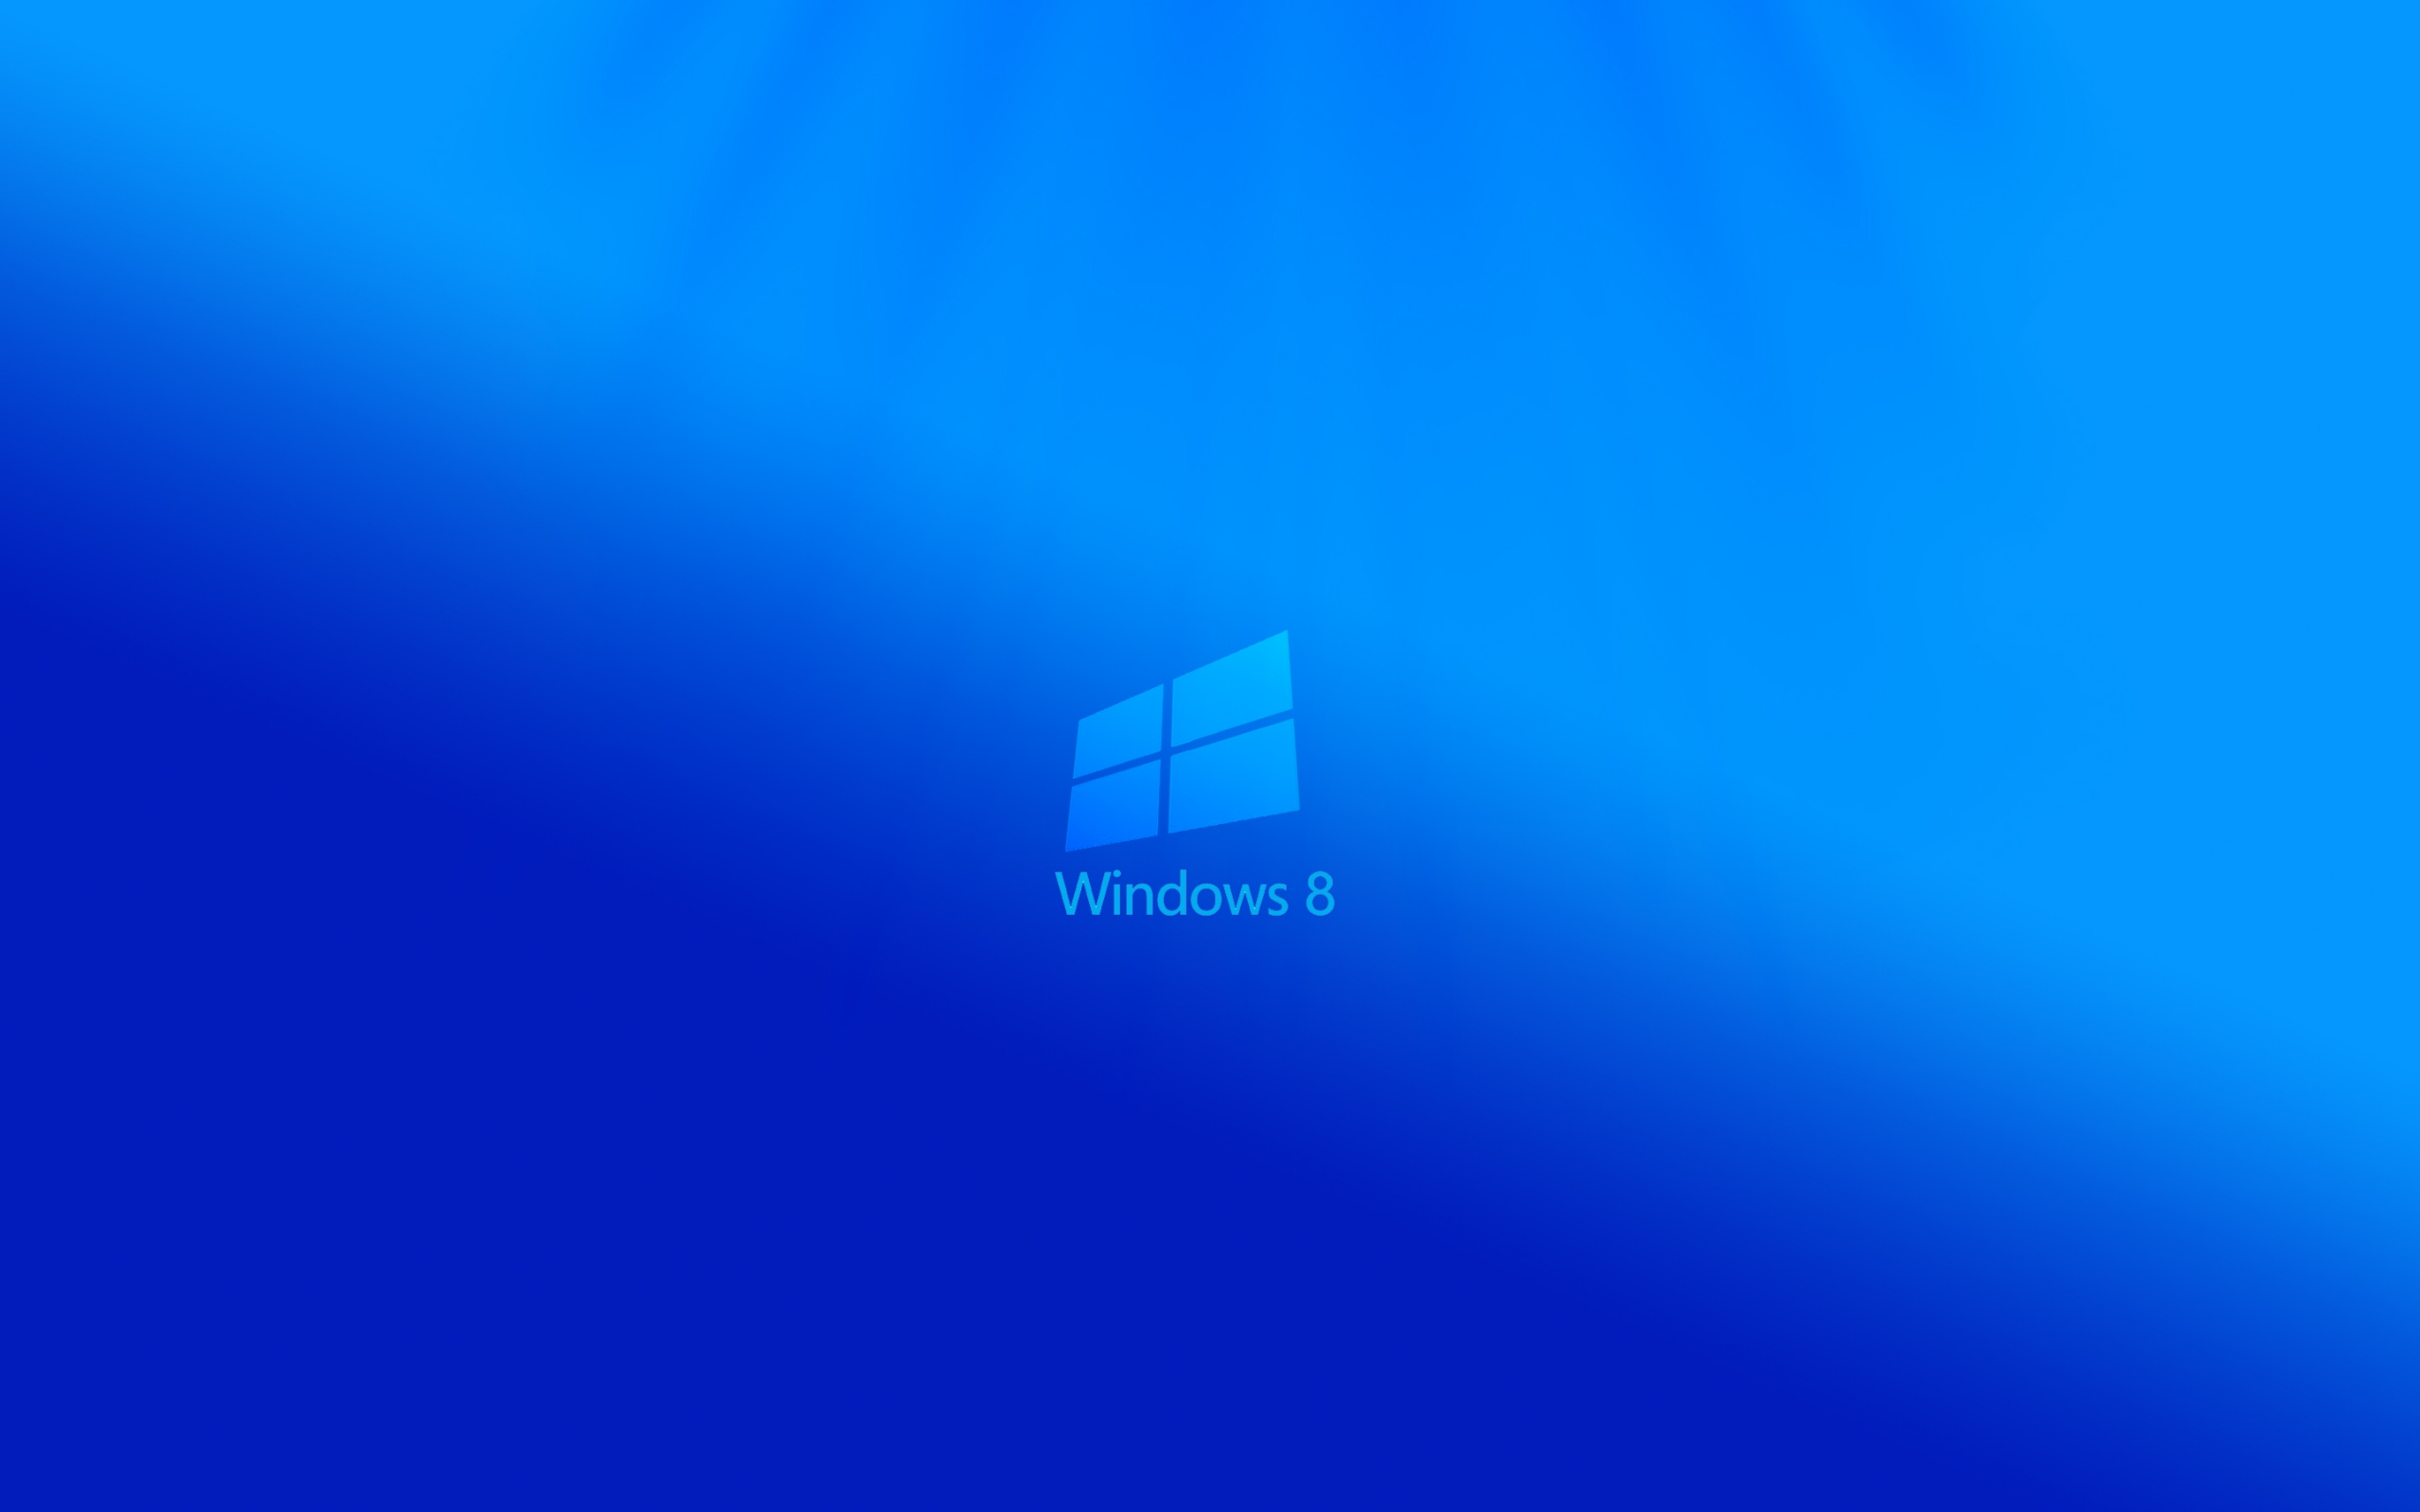 windows 81 Computer Wallpapers Desktop Backgrounds 2560x1600 ID